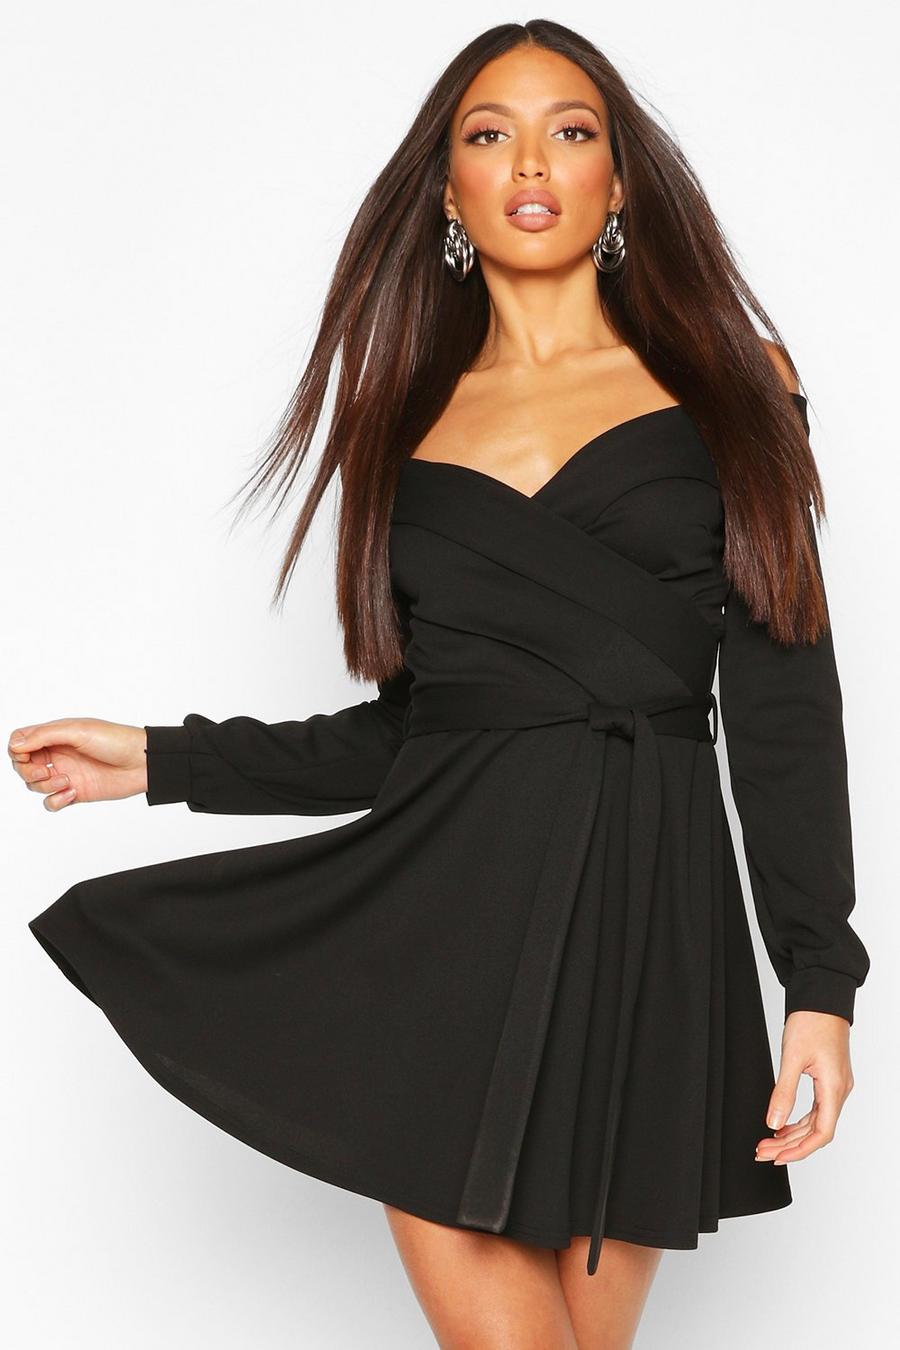 שחור שמלת סקייטר עם כתפיים חשופות וחגורה לנשים גבוהות image number 1